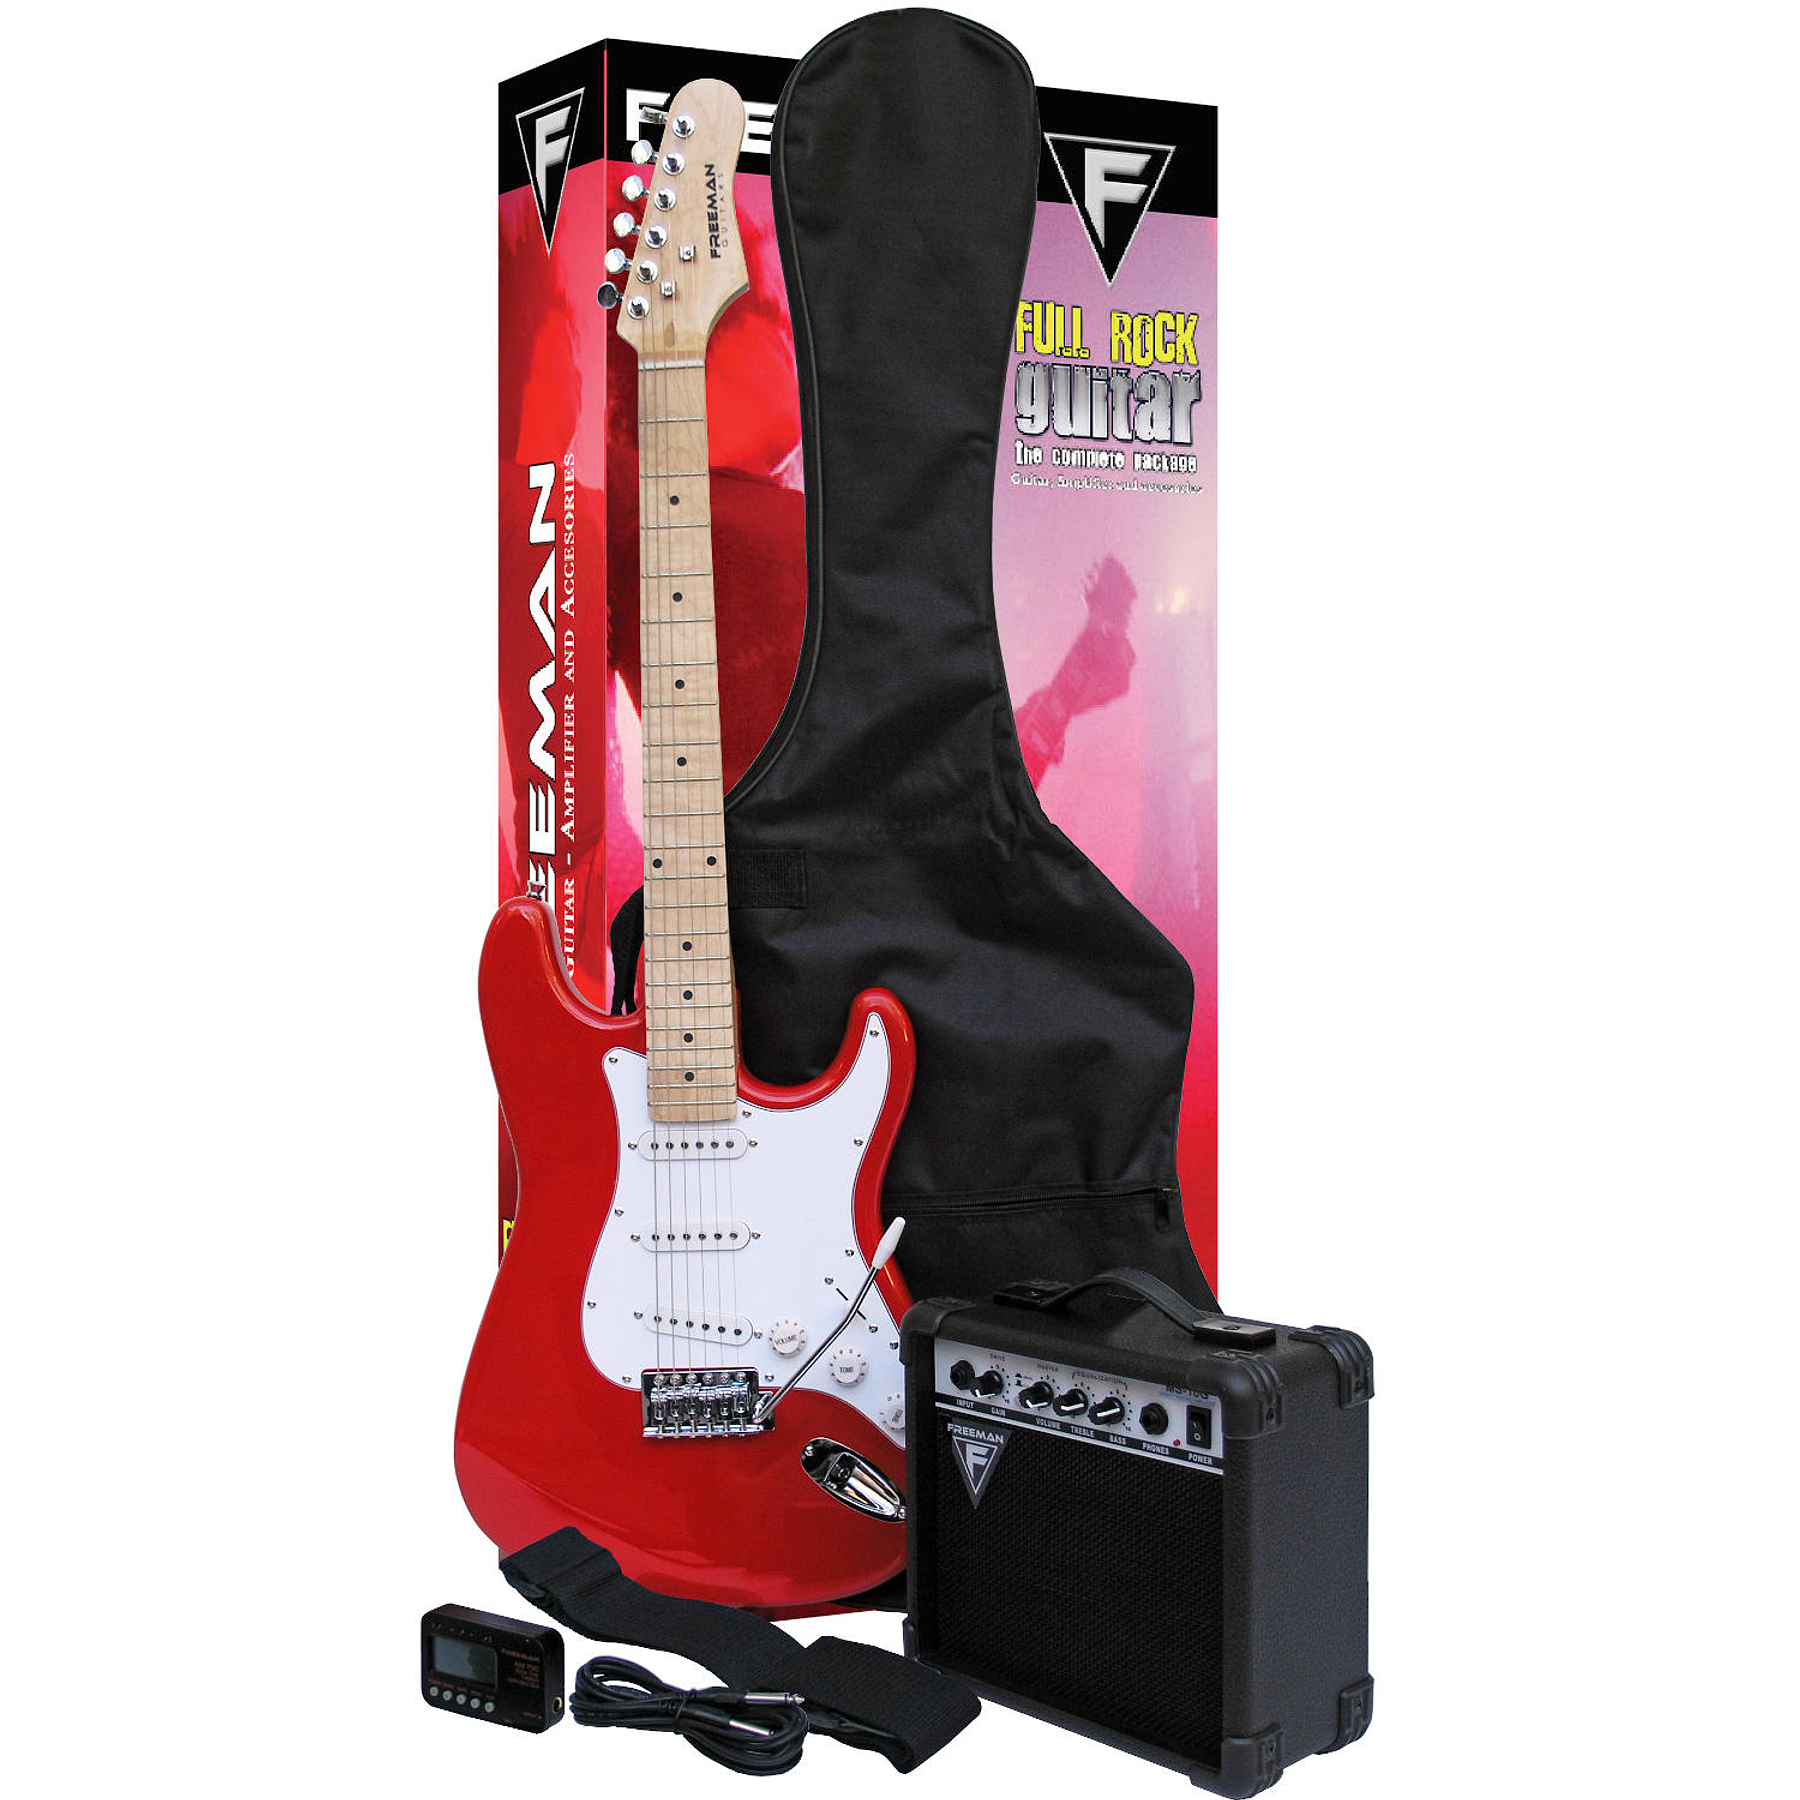 Set de Guitarra Electrica Freeman FULL ROCK color rojo